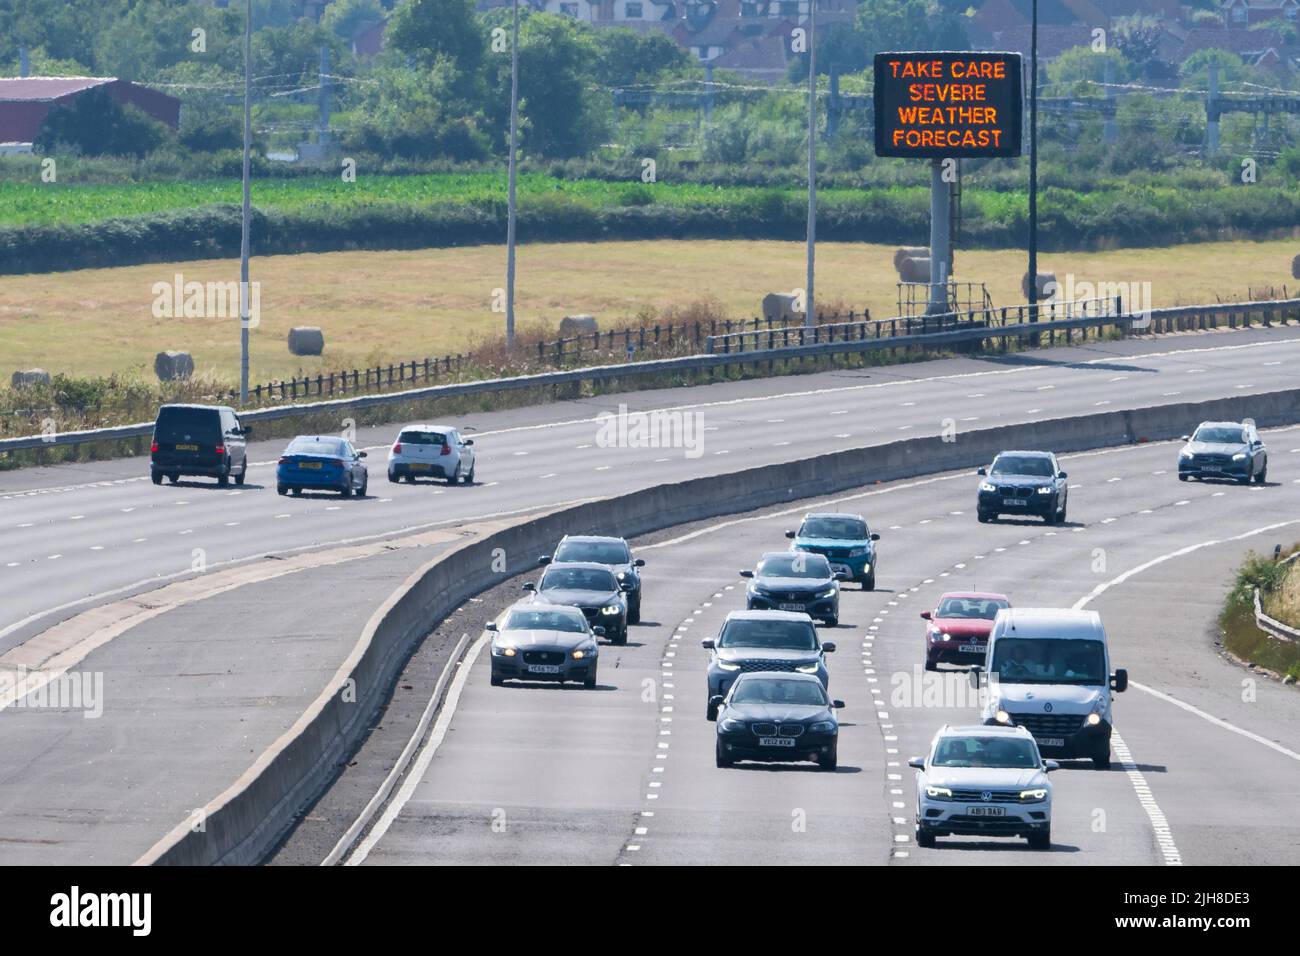 ROGIET, GALES - JULIO 16: Un cartel en el M4 advierte a los automovilistas de tomar cuidado debido a las severas previsiones meteorológicas el 16 de julio de 2022 en Rogiet, Gales. Para el f Foto de stock